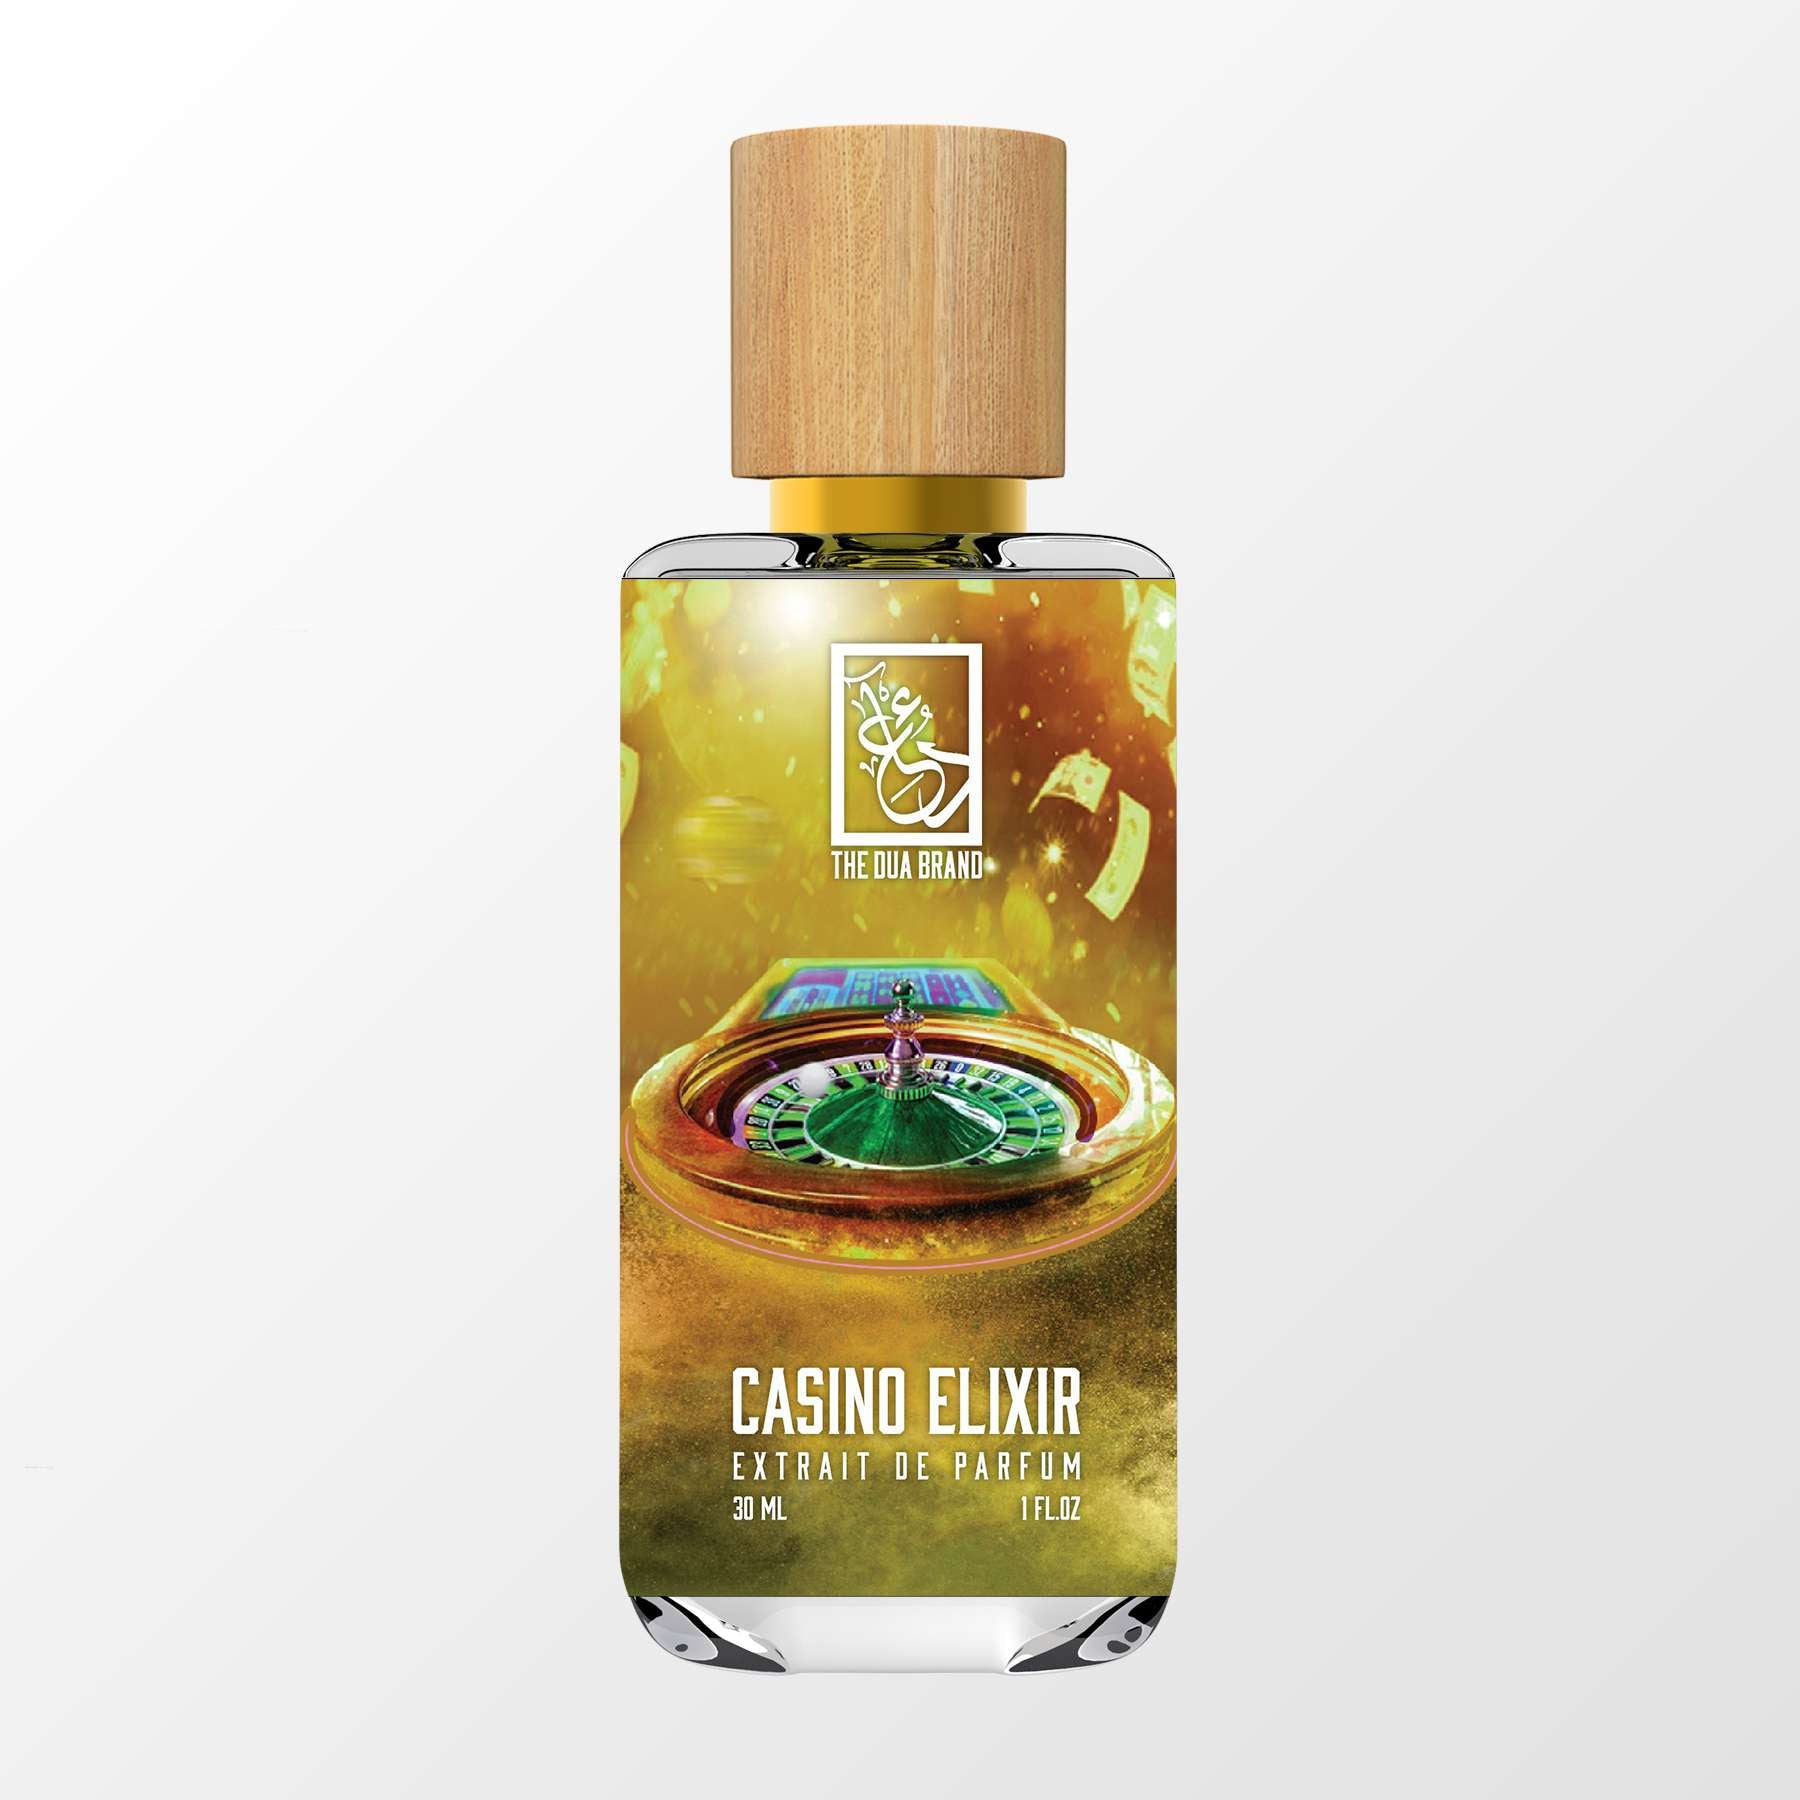 Casino Elixir